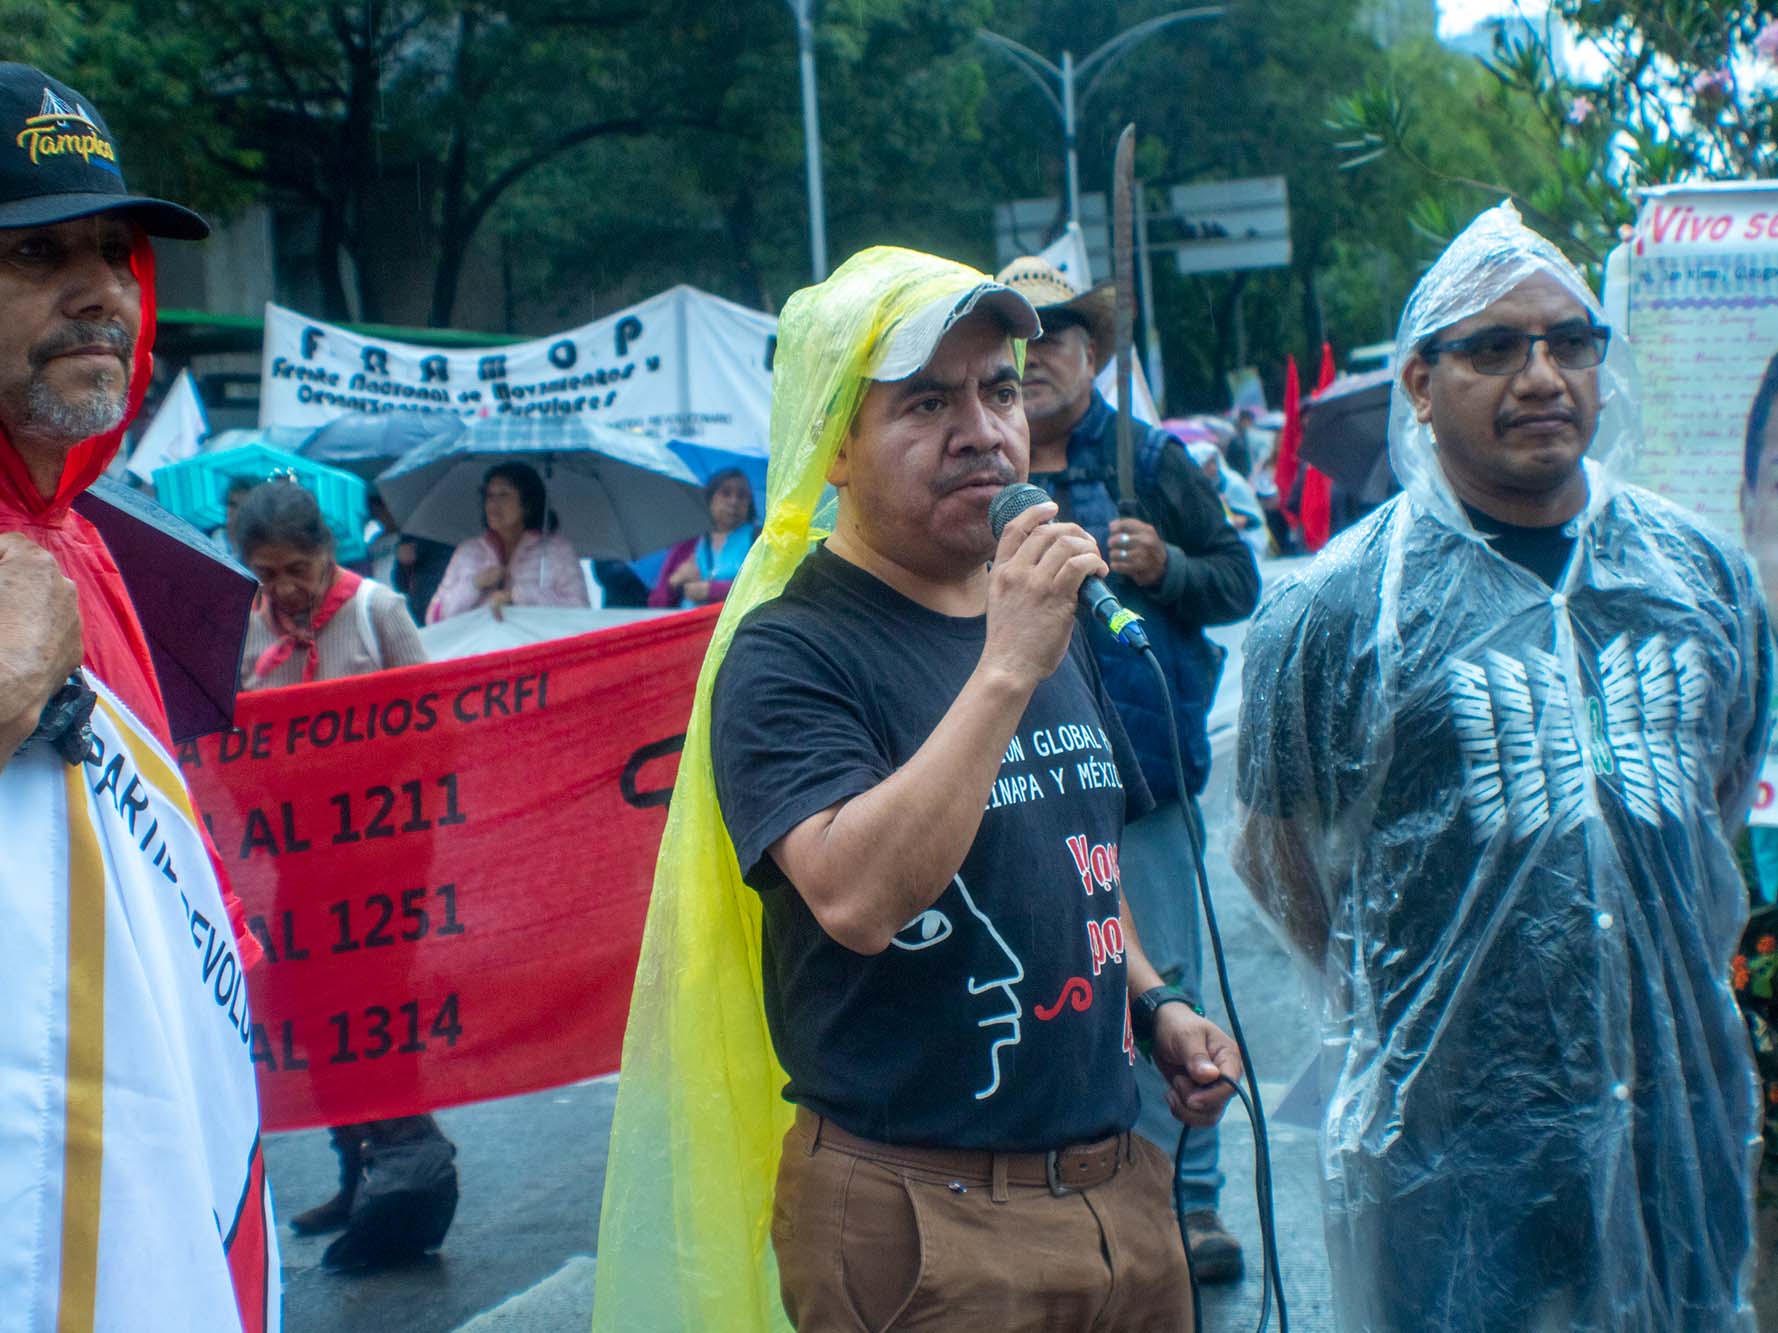 Familiares de los 43 desaparecidos en Ayotzinapa evidenciaron el encubrimiento de la participación militar a casi 10 años del crimen de Estado y la negligencia que hubo durante el periodo presidencial de Andrés Manuel López Obrador con el incumplimiento de promesas hacia los padres y madres.